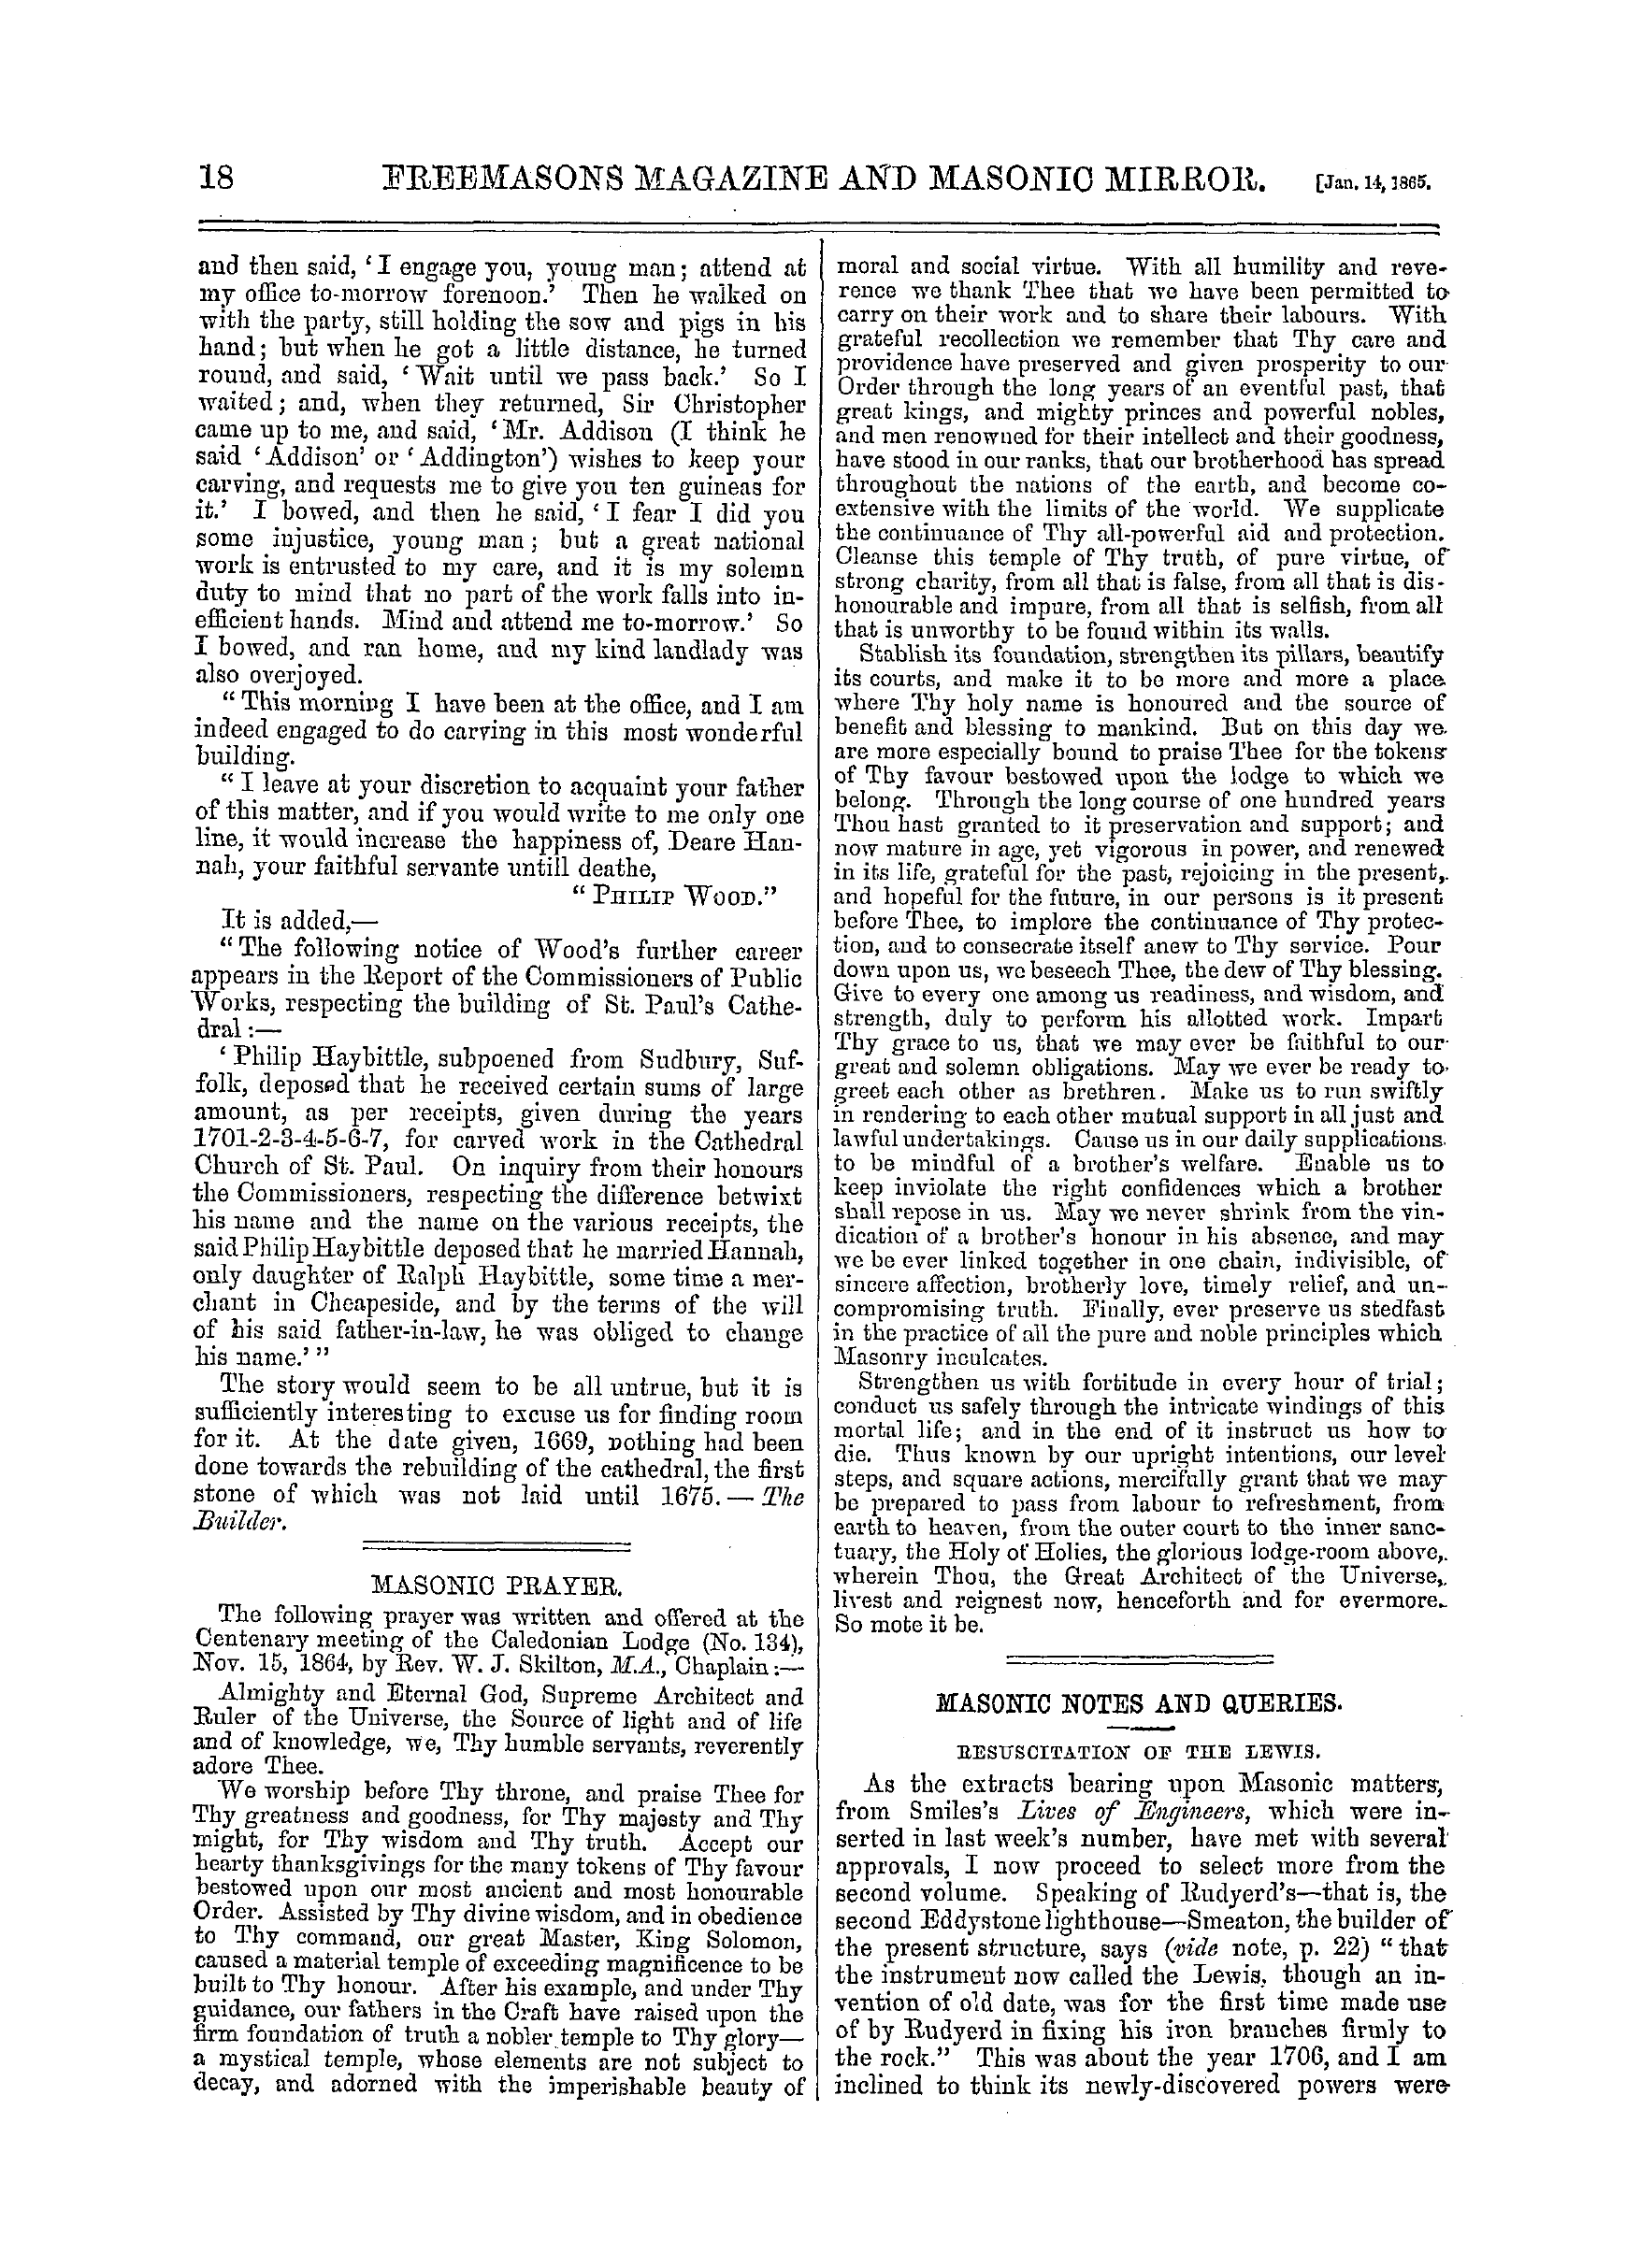 The Freemasons' Monthly Magazine: 1865-01-14: 6